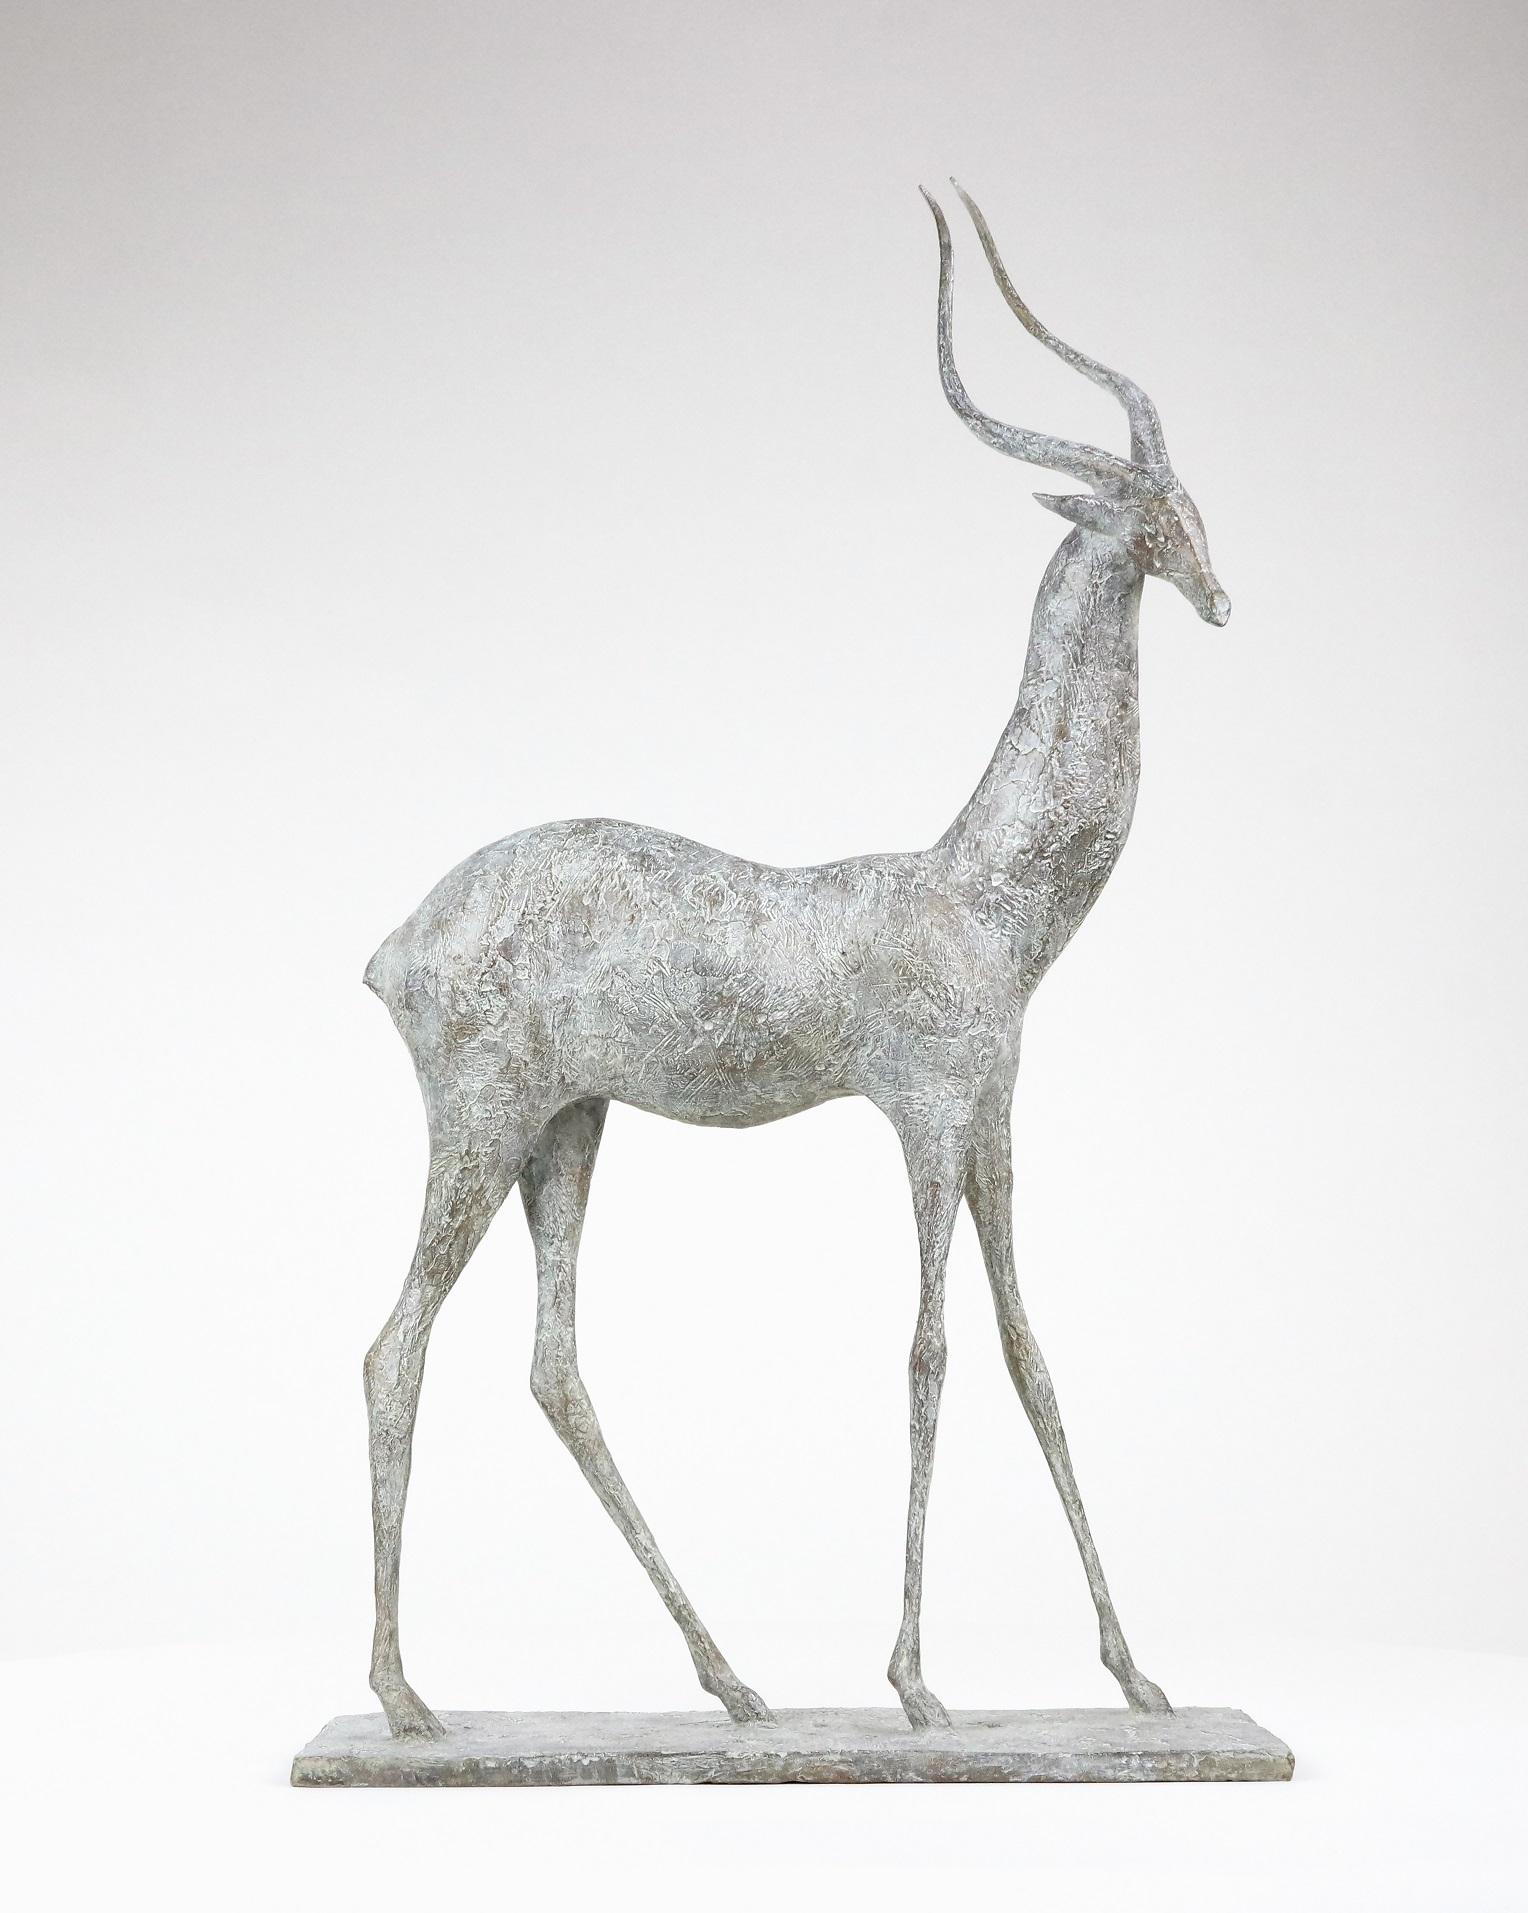 Gazelle I est une sculpture en bronze de l'artiste contemporain français Pierre Yermia, dont les dimensions sont les suivantes  70 × 40 × 20 cm (27.6 × 15.7 × 7.9 in). 
La sculpture est signée et numérotée, elle fait partie d'une édition limitée à 8